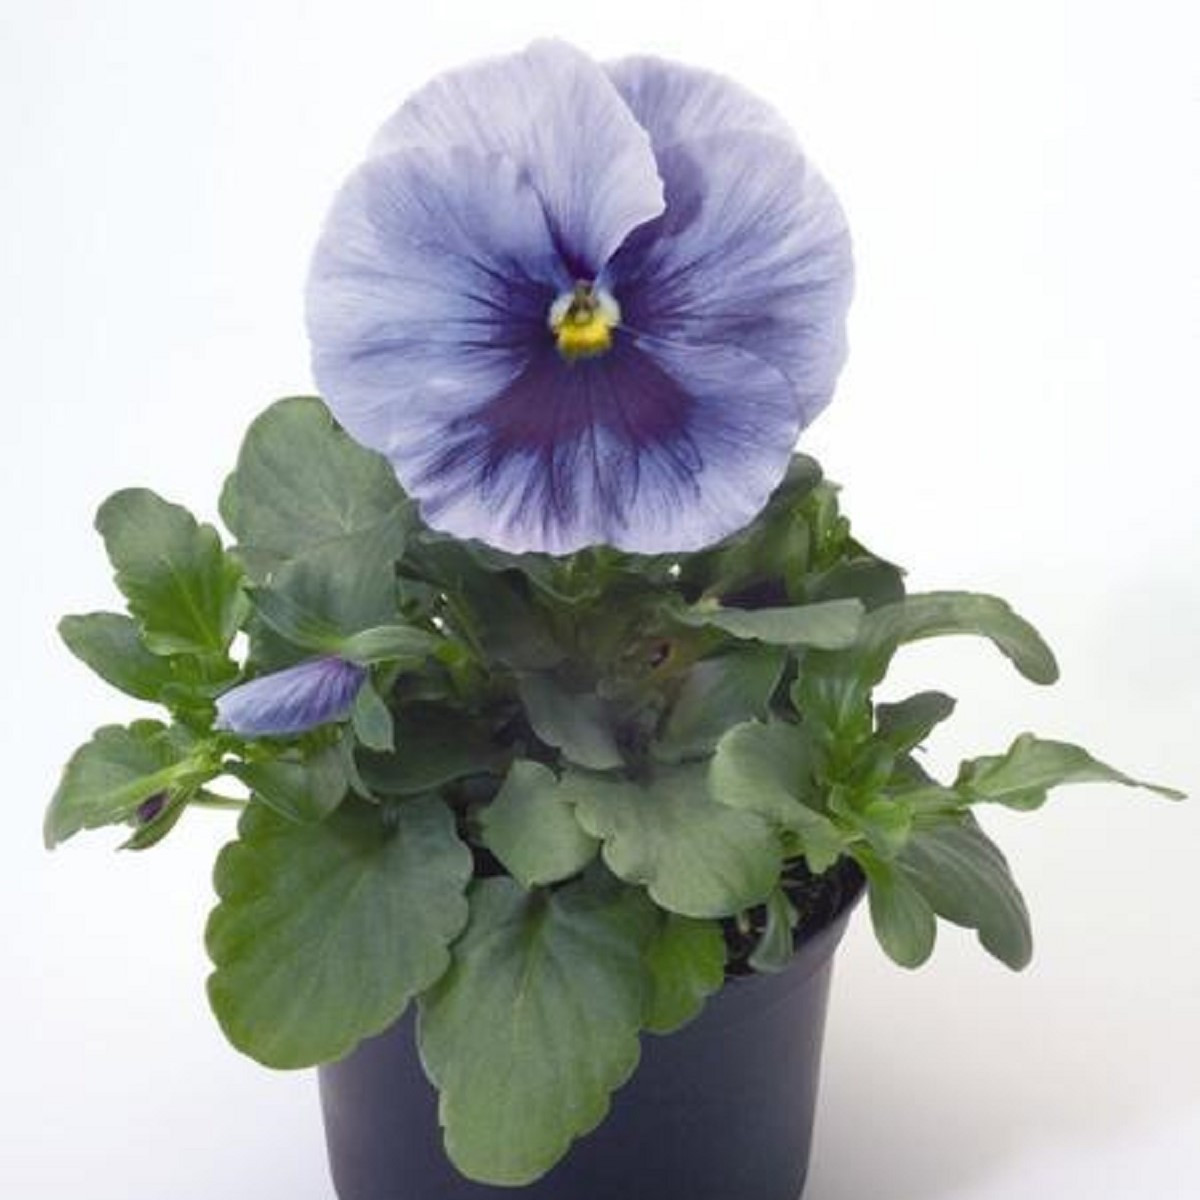 Violka stříbřitě modrá s okem Inspire F1 - Viola x wittrockiana - semena violky - 20 ks